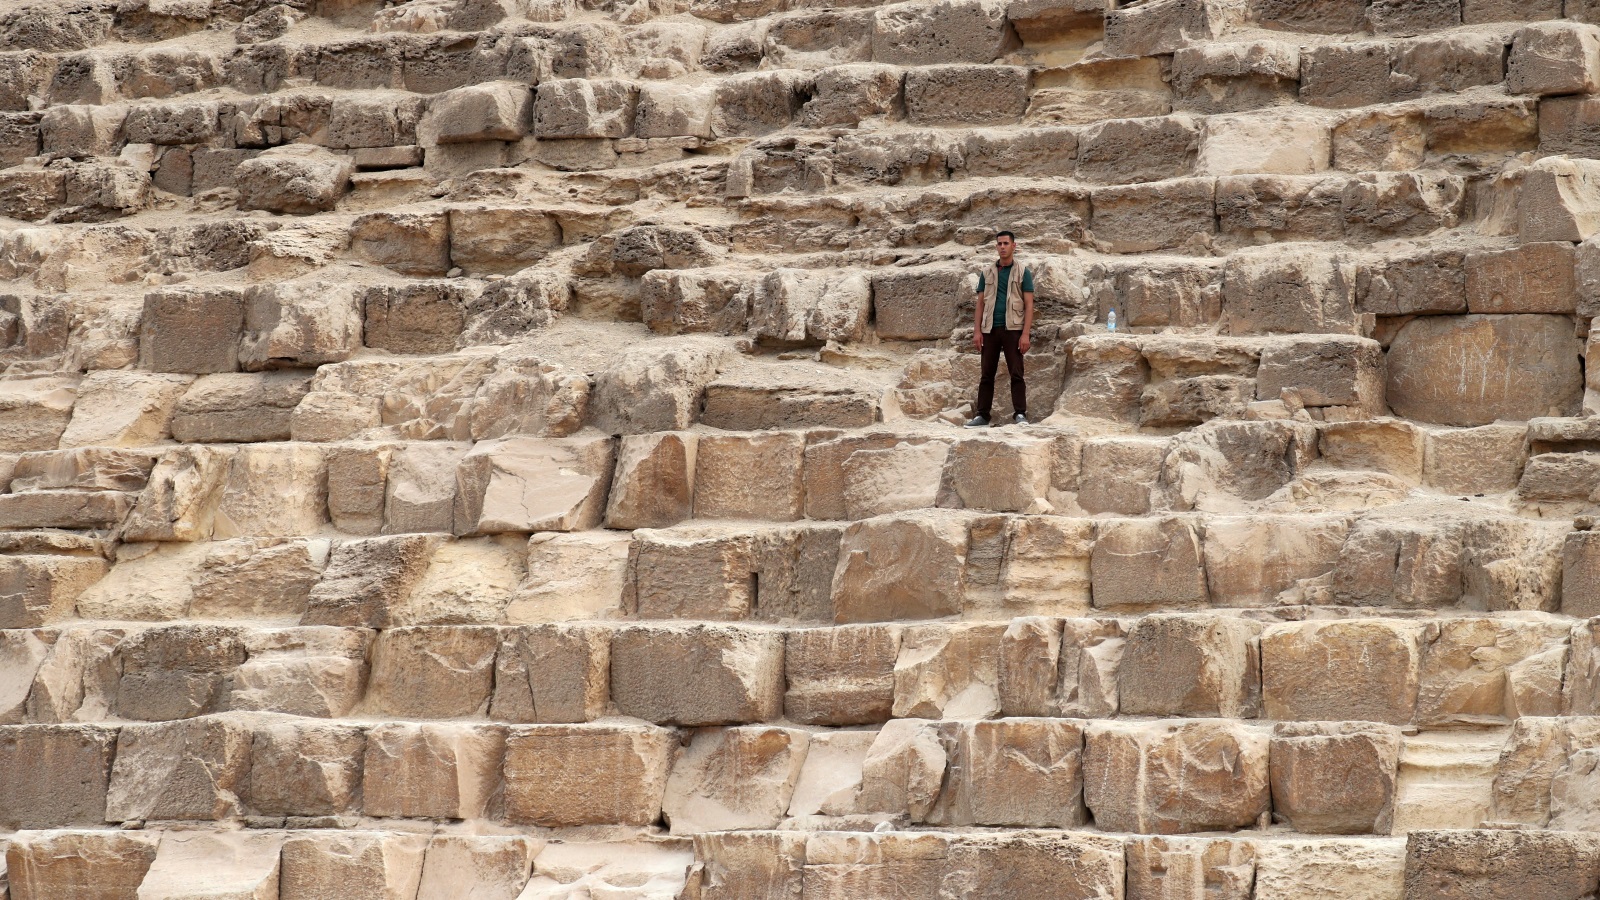 الطريقة التي رفعت بها هذه الأحجار الضخمة لبناء الأهرامات ظلت لغزا يحاول العلماء اكتشافه (رويترز)